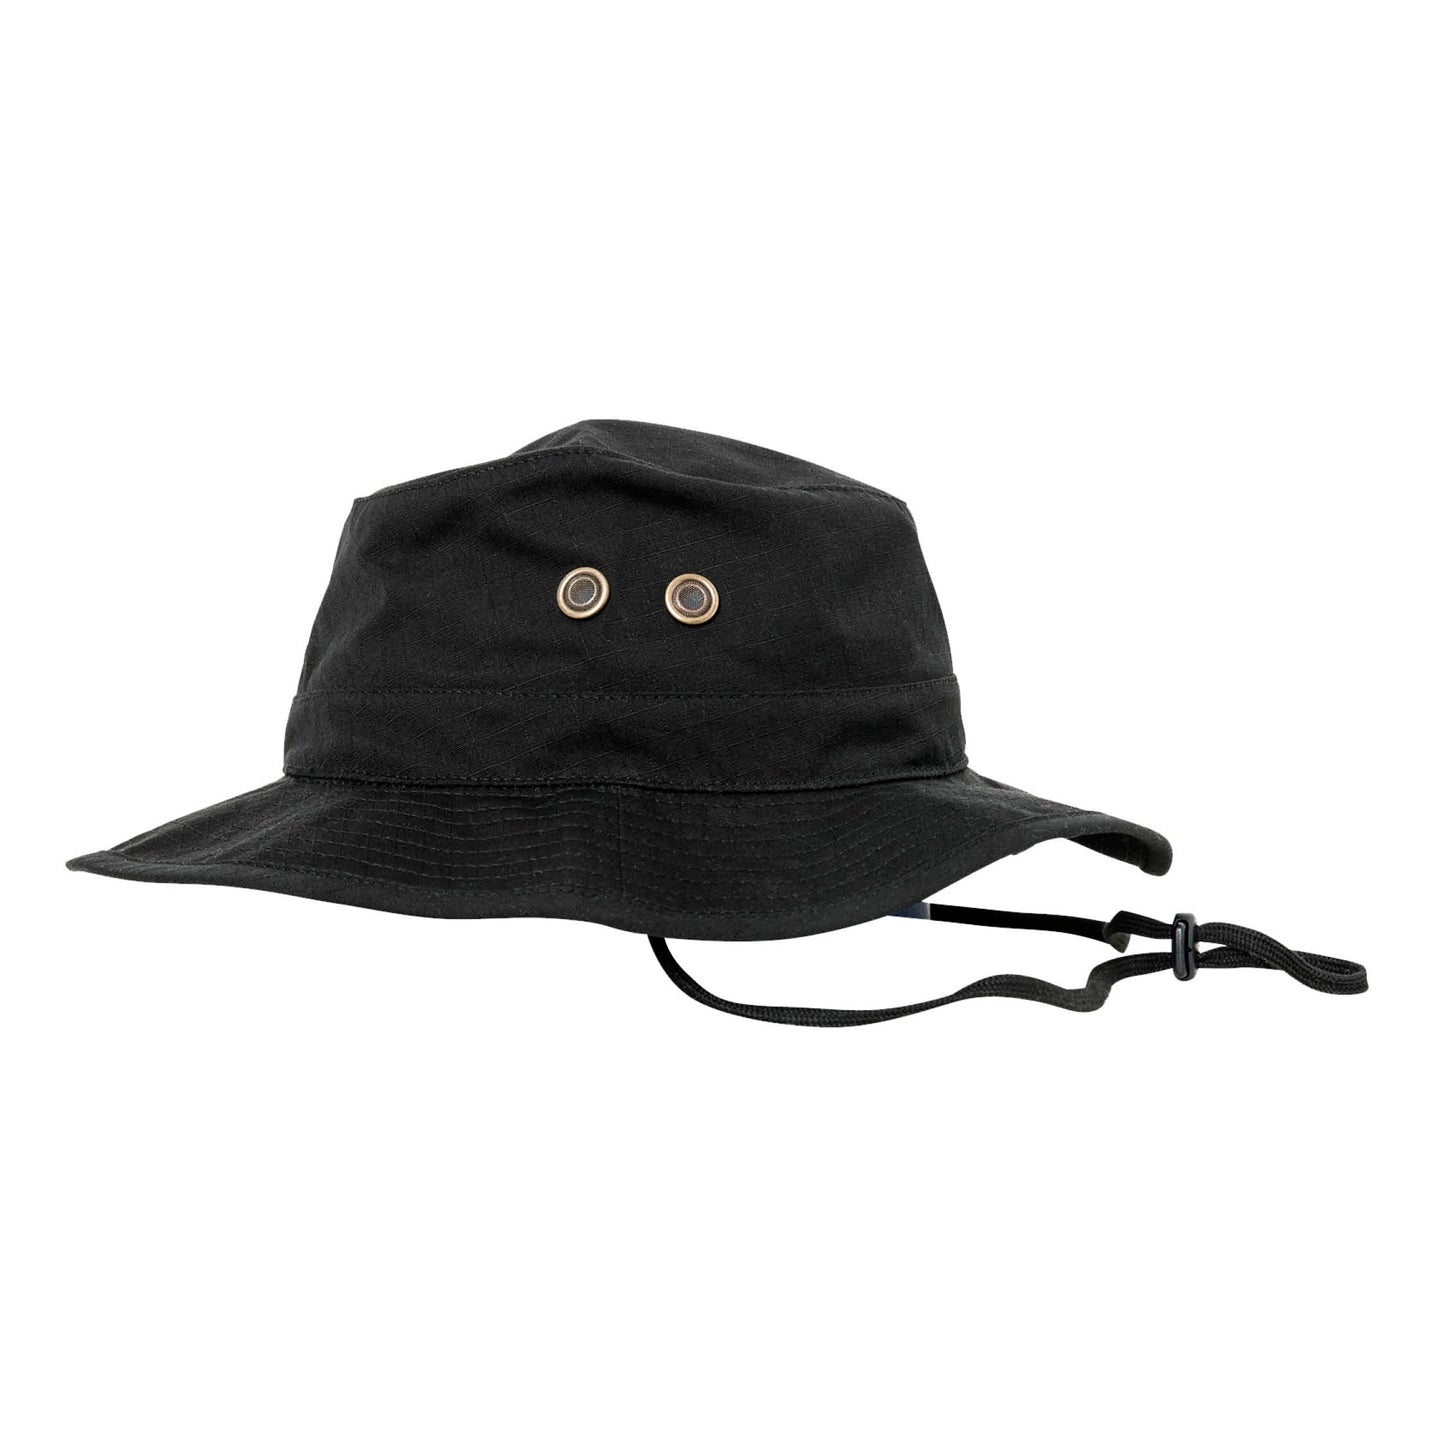 SHREDSAFARI Ranger Hat, Black